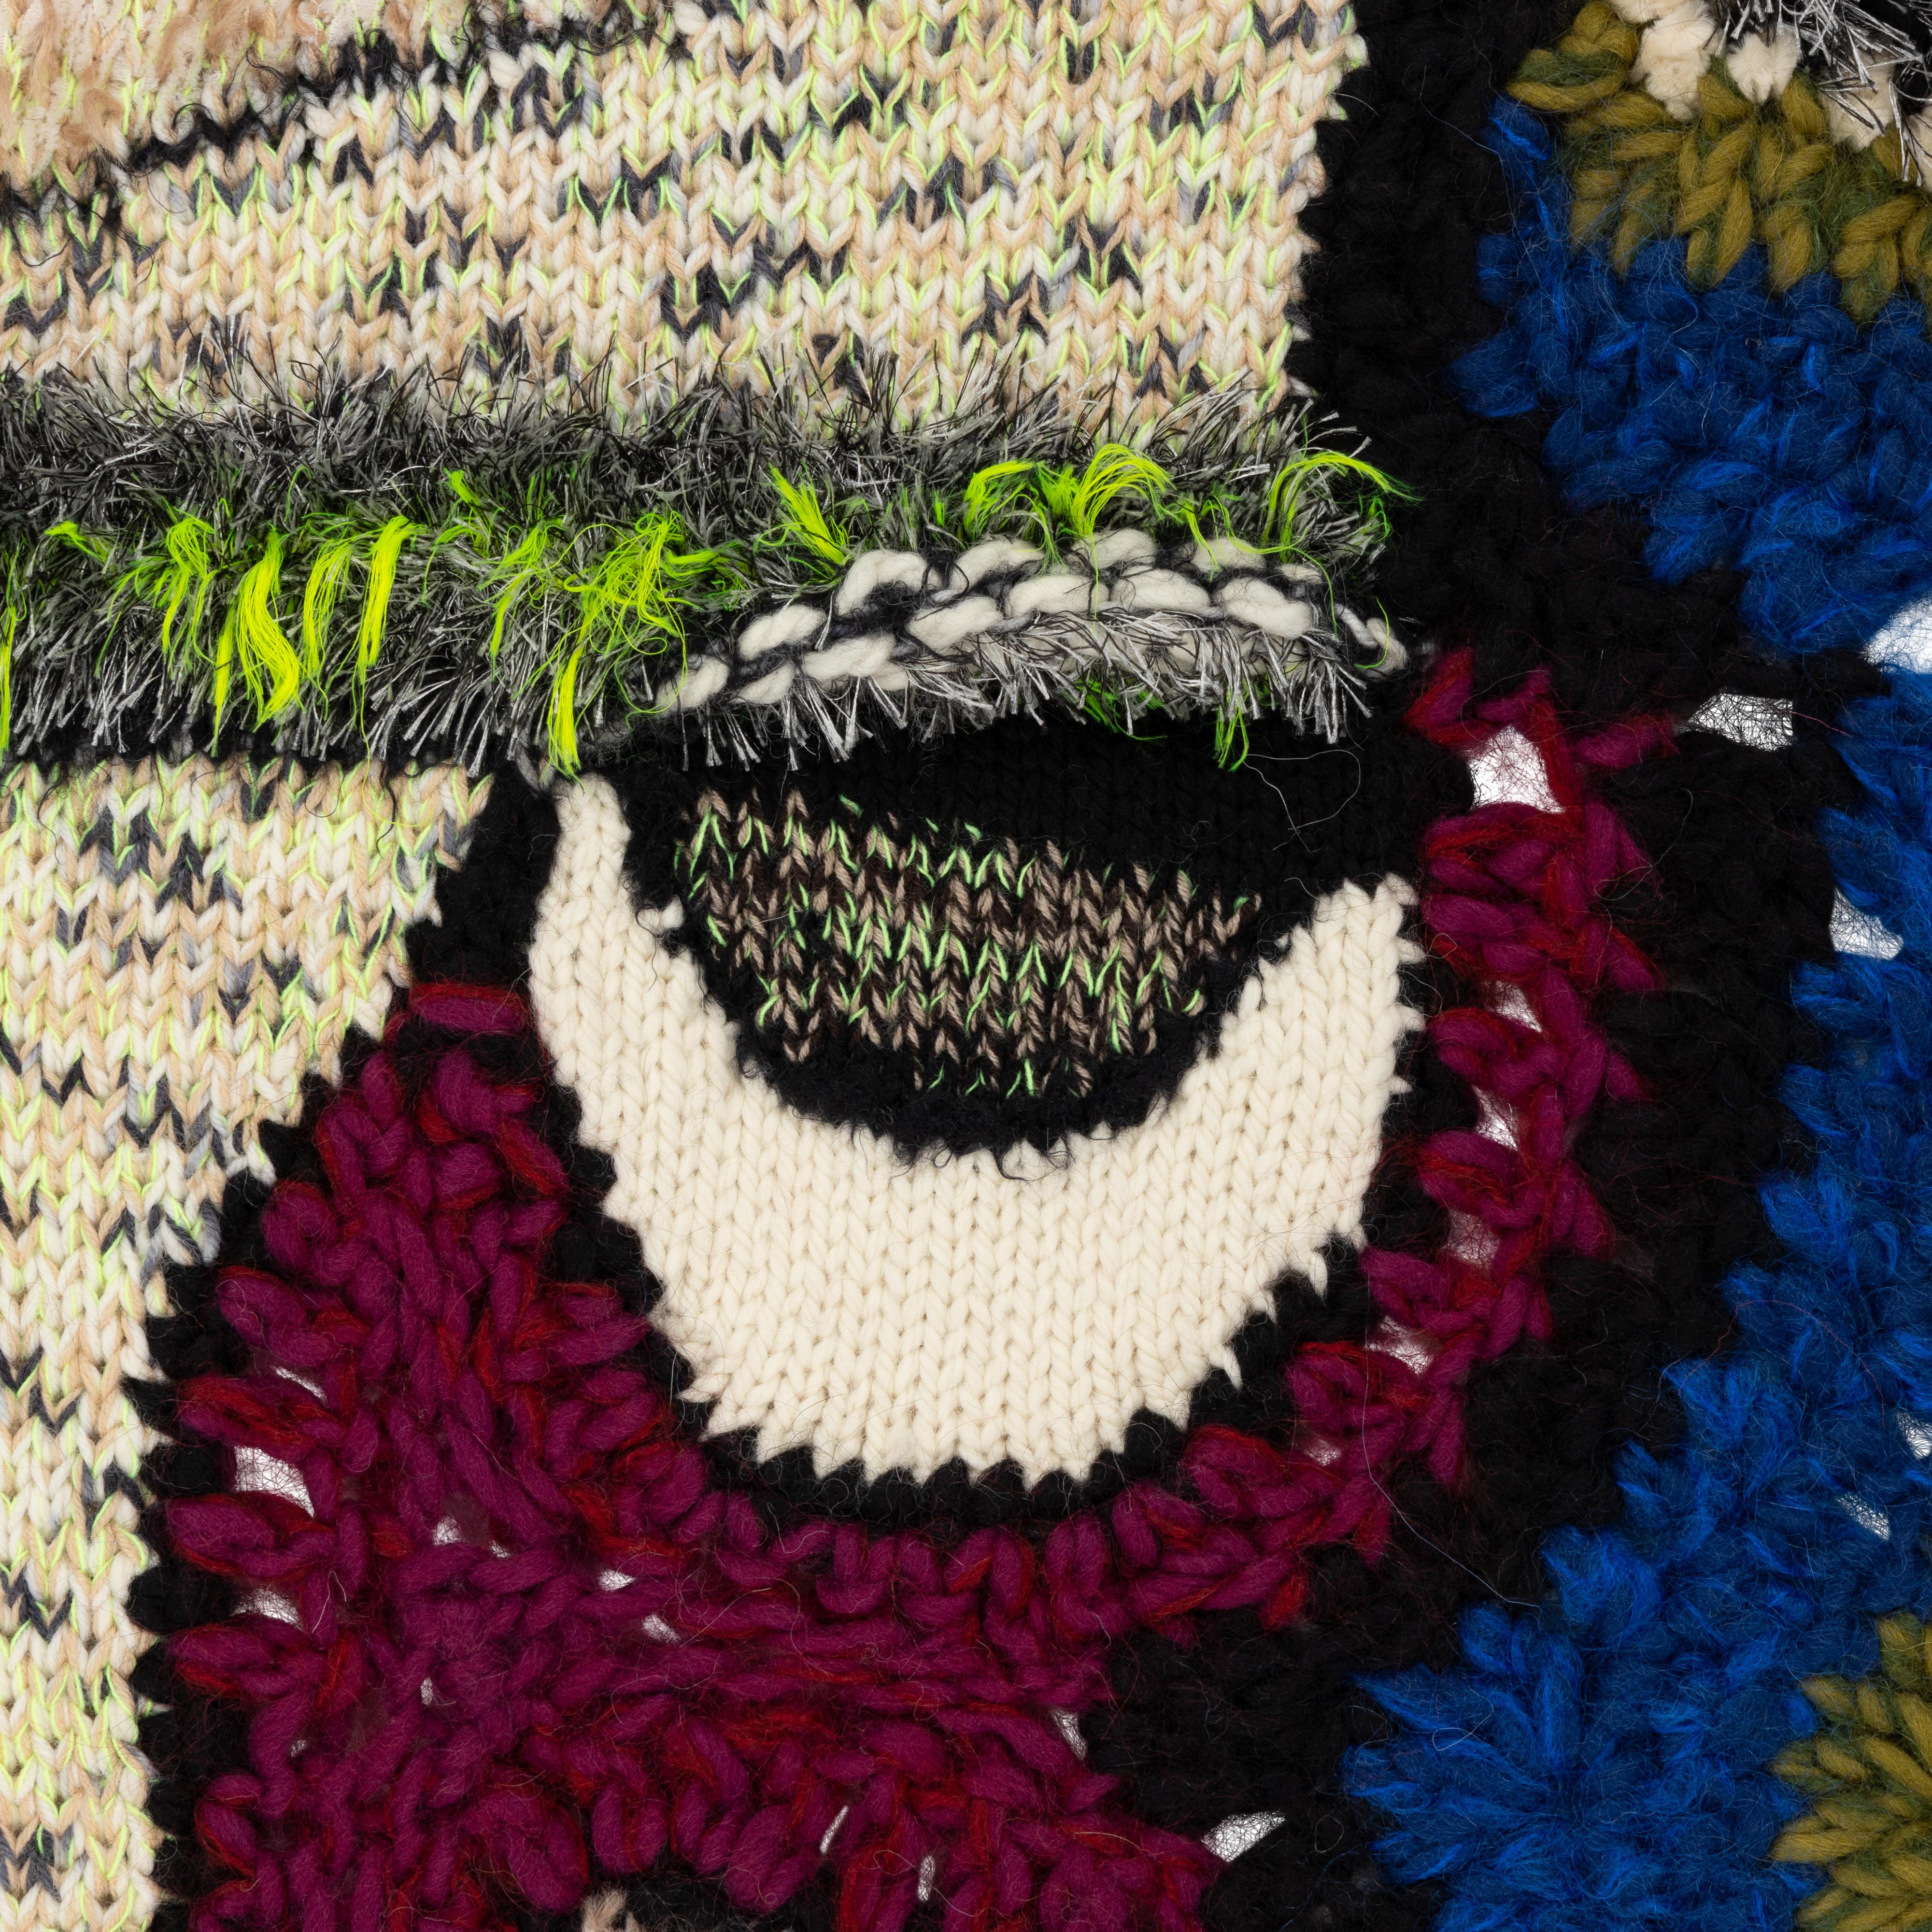 Handgefertigter Wandbehang /Decke in Form eines riesigen maskenartigen Gesichts mit grafischen geometrischen Mustern.
Gestrickte und gehäkelte Kunstdecke, Textilkunst, Handarbeit,  Gestrickter Wandteppich, Lebendige Farben, Wandbehang, Decke zum